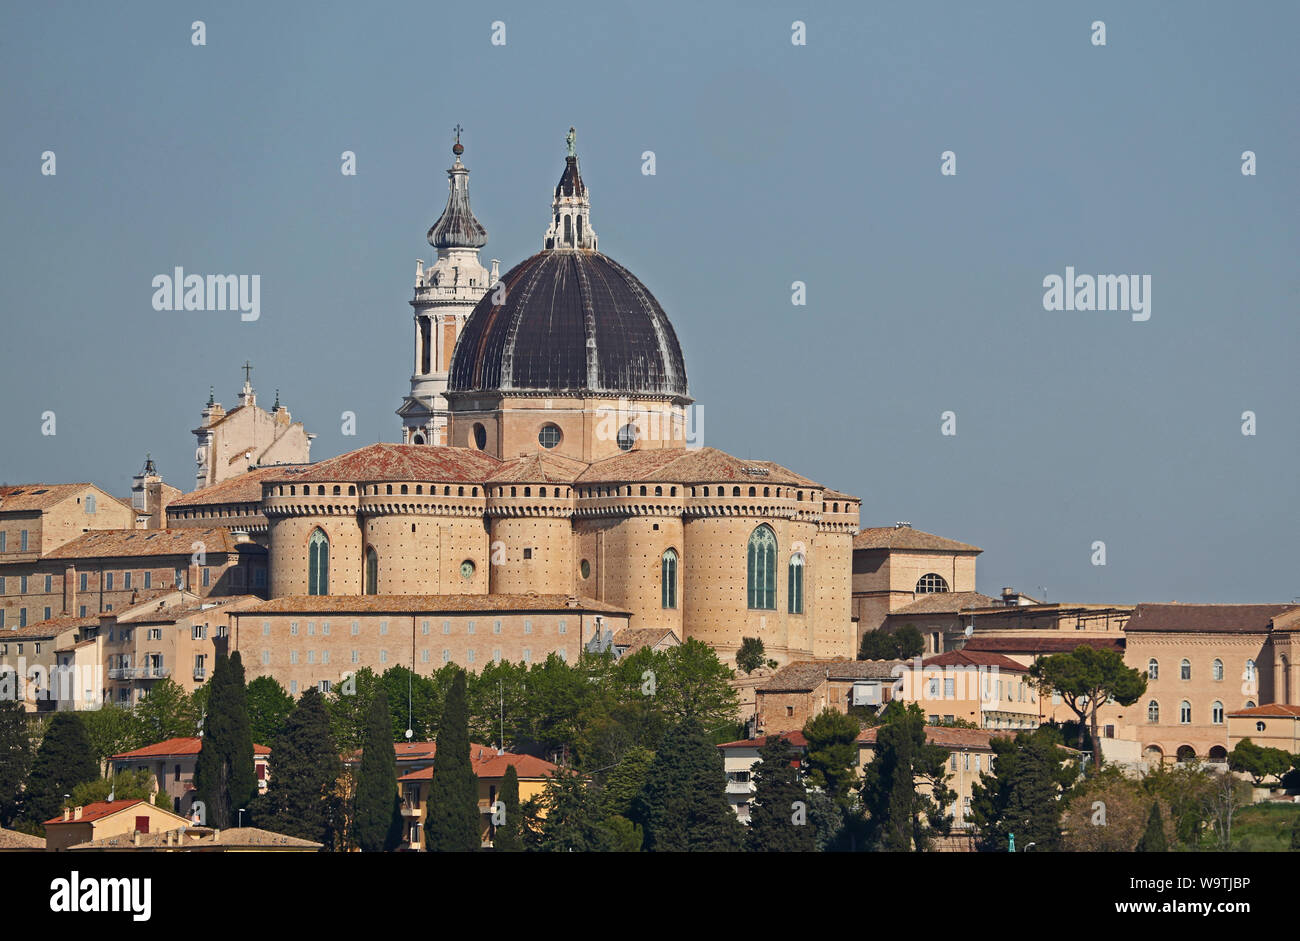 La basilica della Santa Casa o santuario della santa casa di Loreto in provincia di Ancona, nelle Marche Italia gemellato con Lourdes Foto Stock